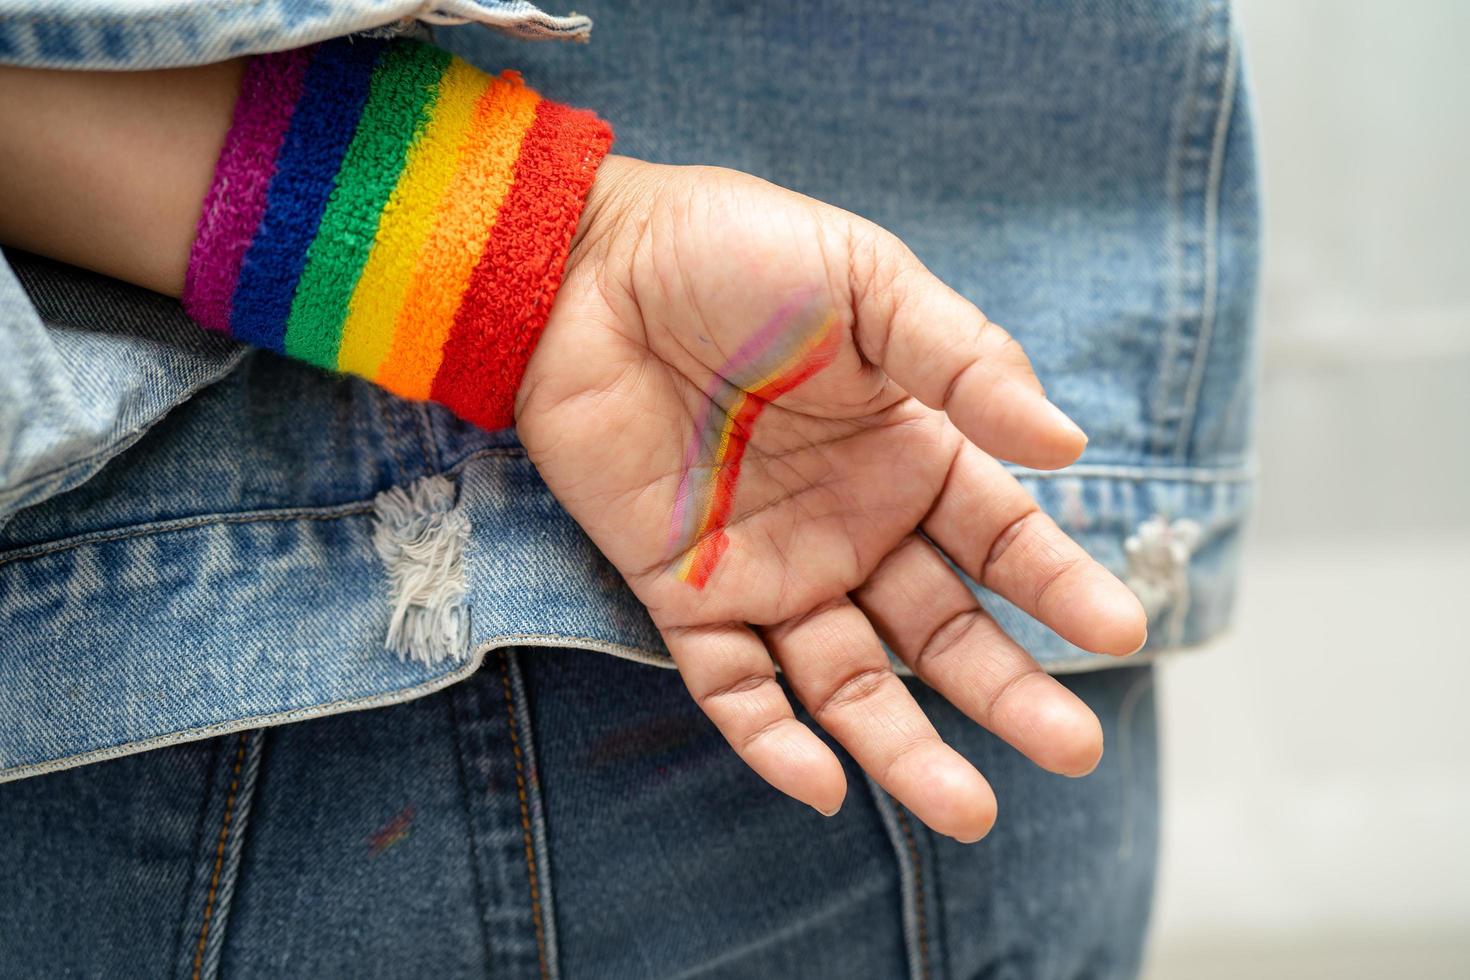 senhora asiática usando pulseiras de bandeira do arco-íris, símbolo do mês do orgulho LGBT, comemora anual em junho social de gays, lésbicas, bissexuais, transgêneros, direitos humanos. foto